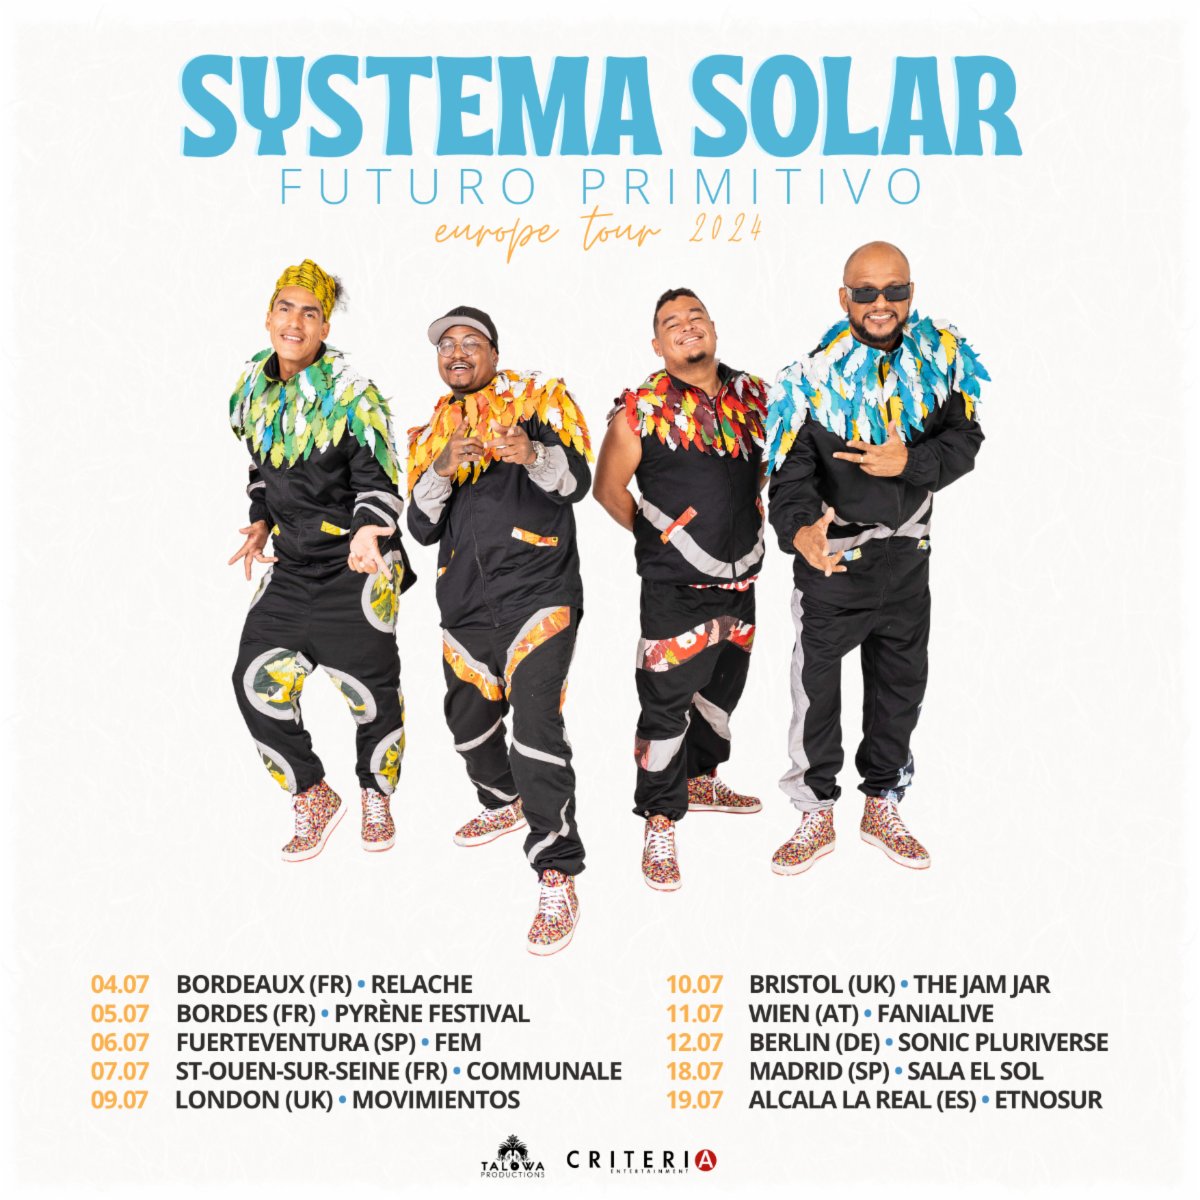 Systema Solar llevará su 'Futuro Primitivo' a Europa El colectivo músico visual Systema Solar estará de gira por Europa en el mes de Julio, llevando por diferentes países y ciudades los ritmos que los caracterizan, representando a Colombia y sus sonidos en los diferentes escenarios.